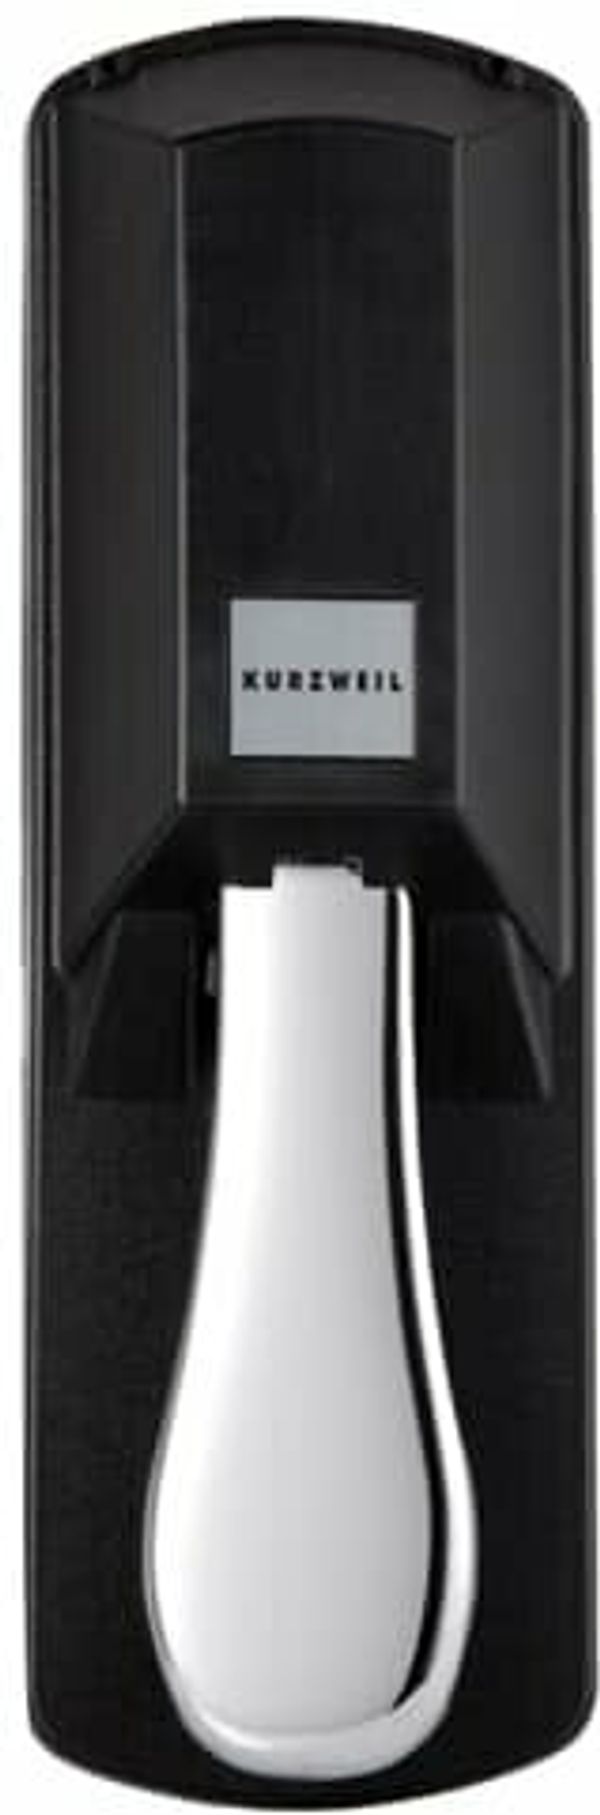 Kurzweil Kurzweil KP-1H Sustain pedal